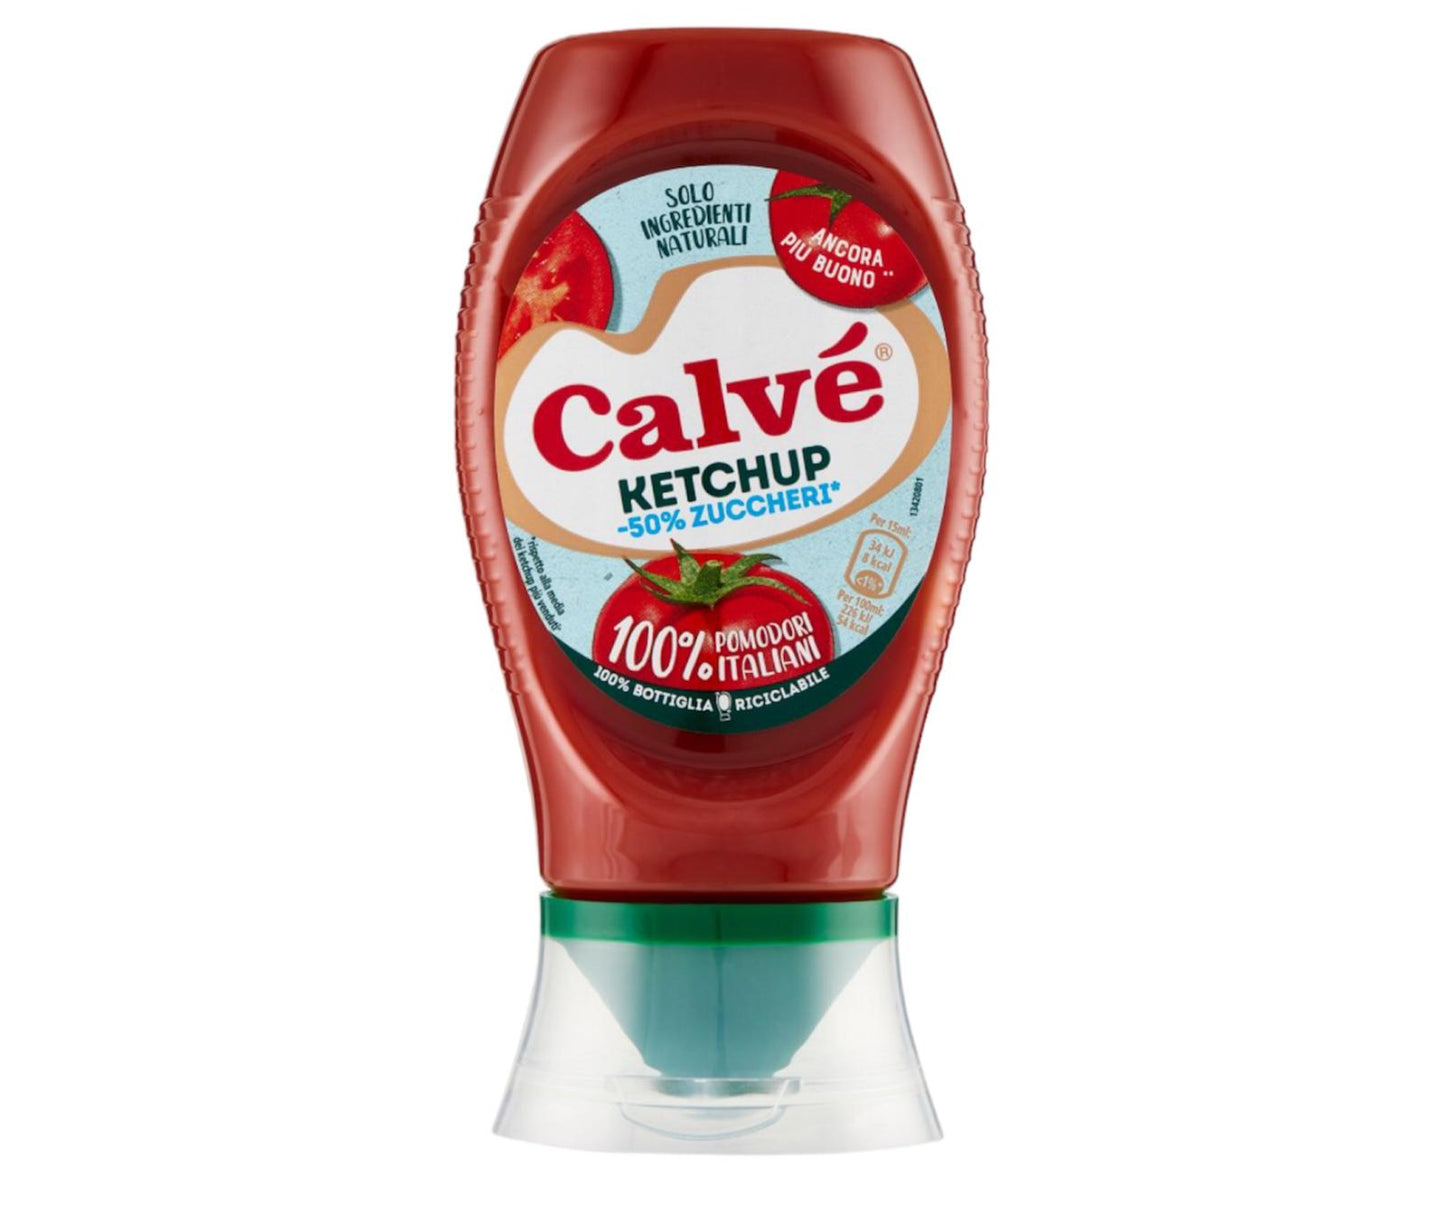 Calvè ketchup light -50% DI ZUCCHERI 100% pomodori italiani bottiglia pet da 250ml